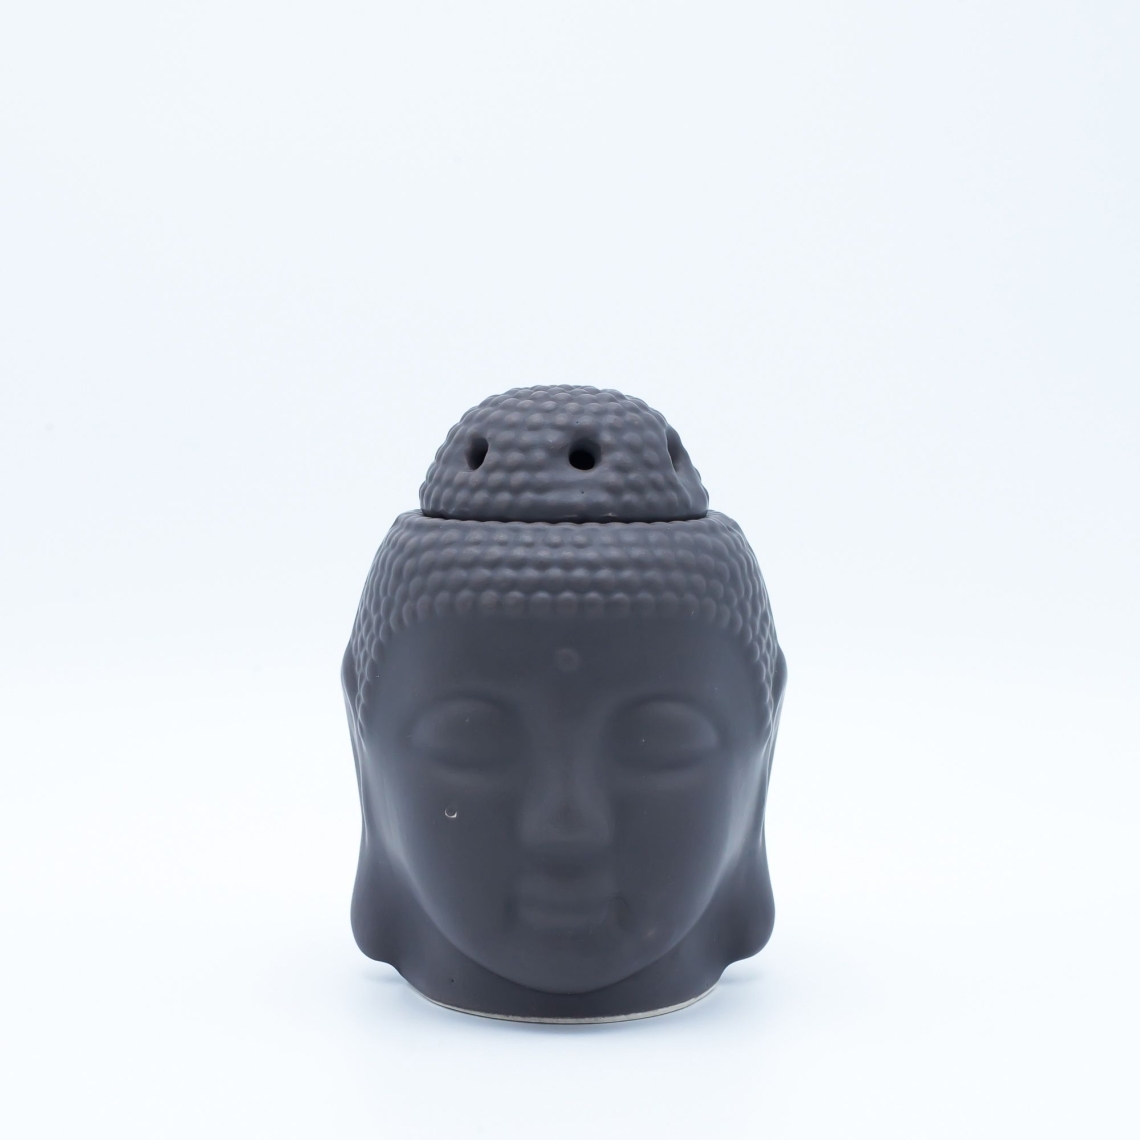 Budha Buhurdanlık - Siyah - Thumbnail